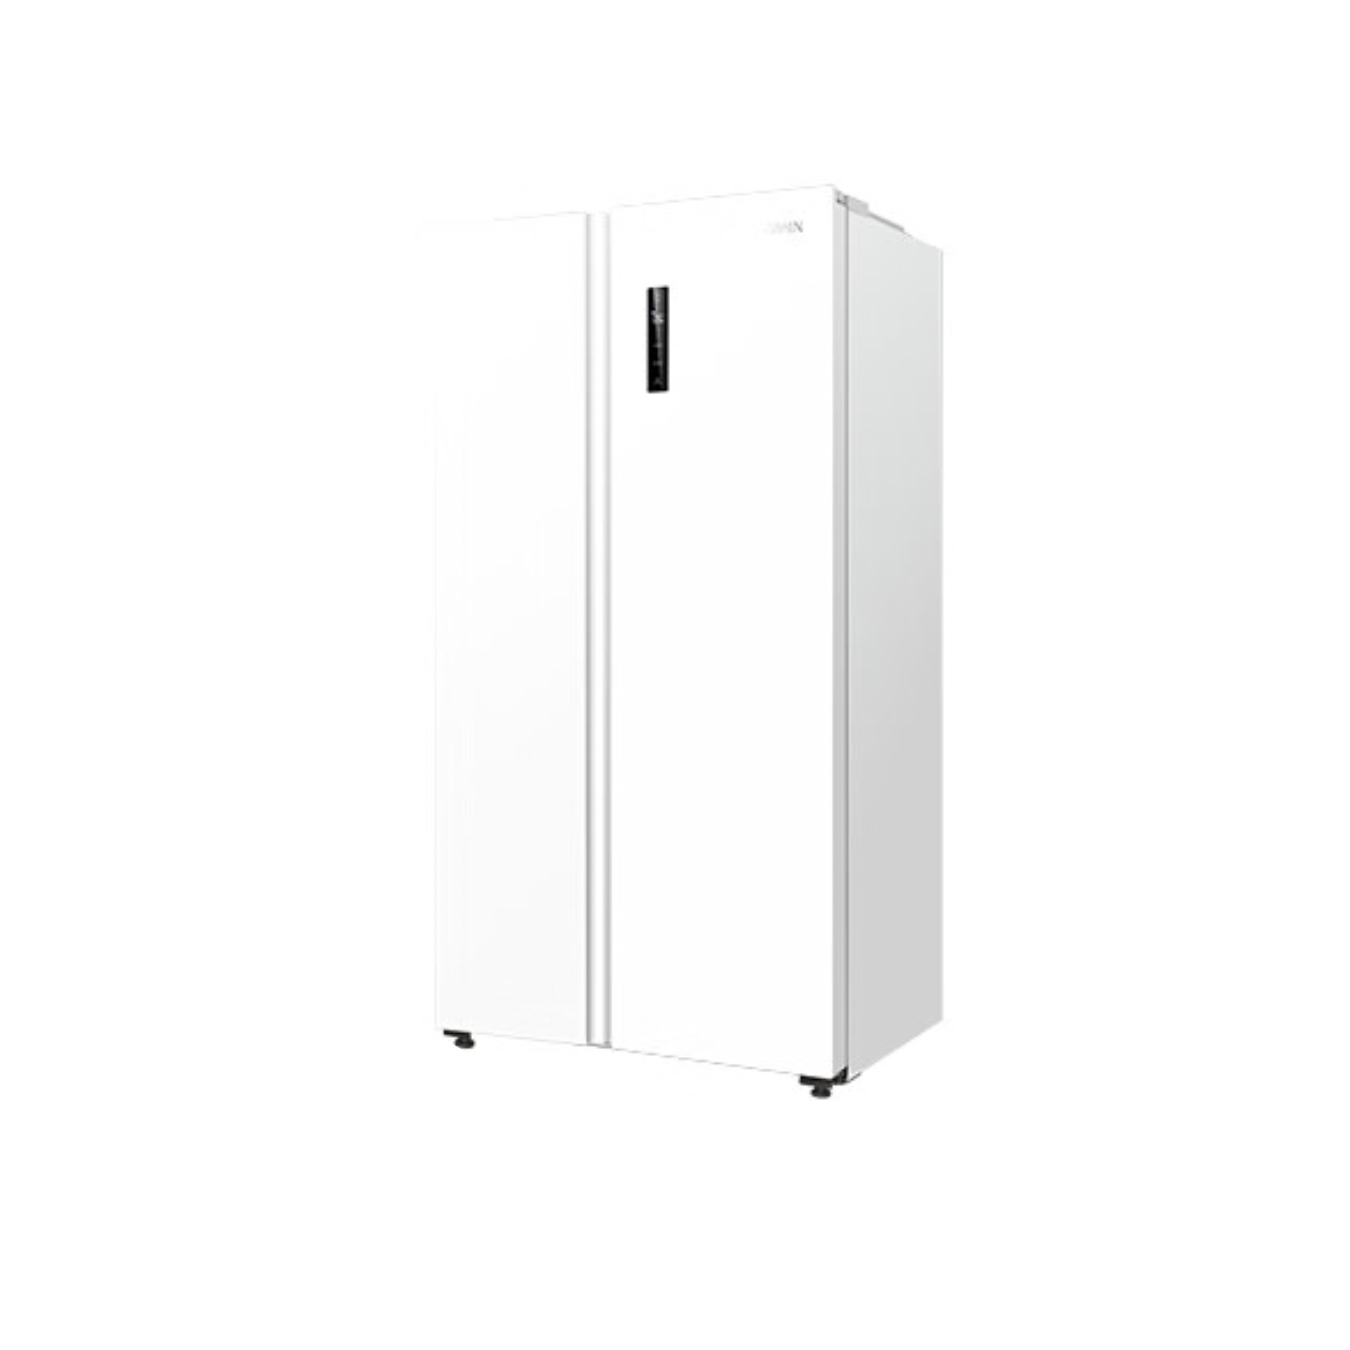 WAHIN 华凌 HR-610WKPZH1 风冷对开门冰箱 610L 极地白 1701元（需用券）